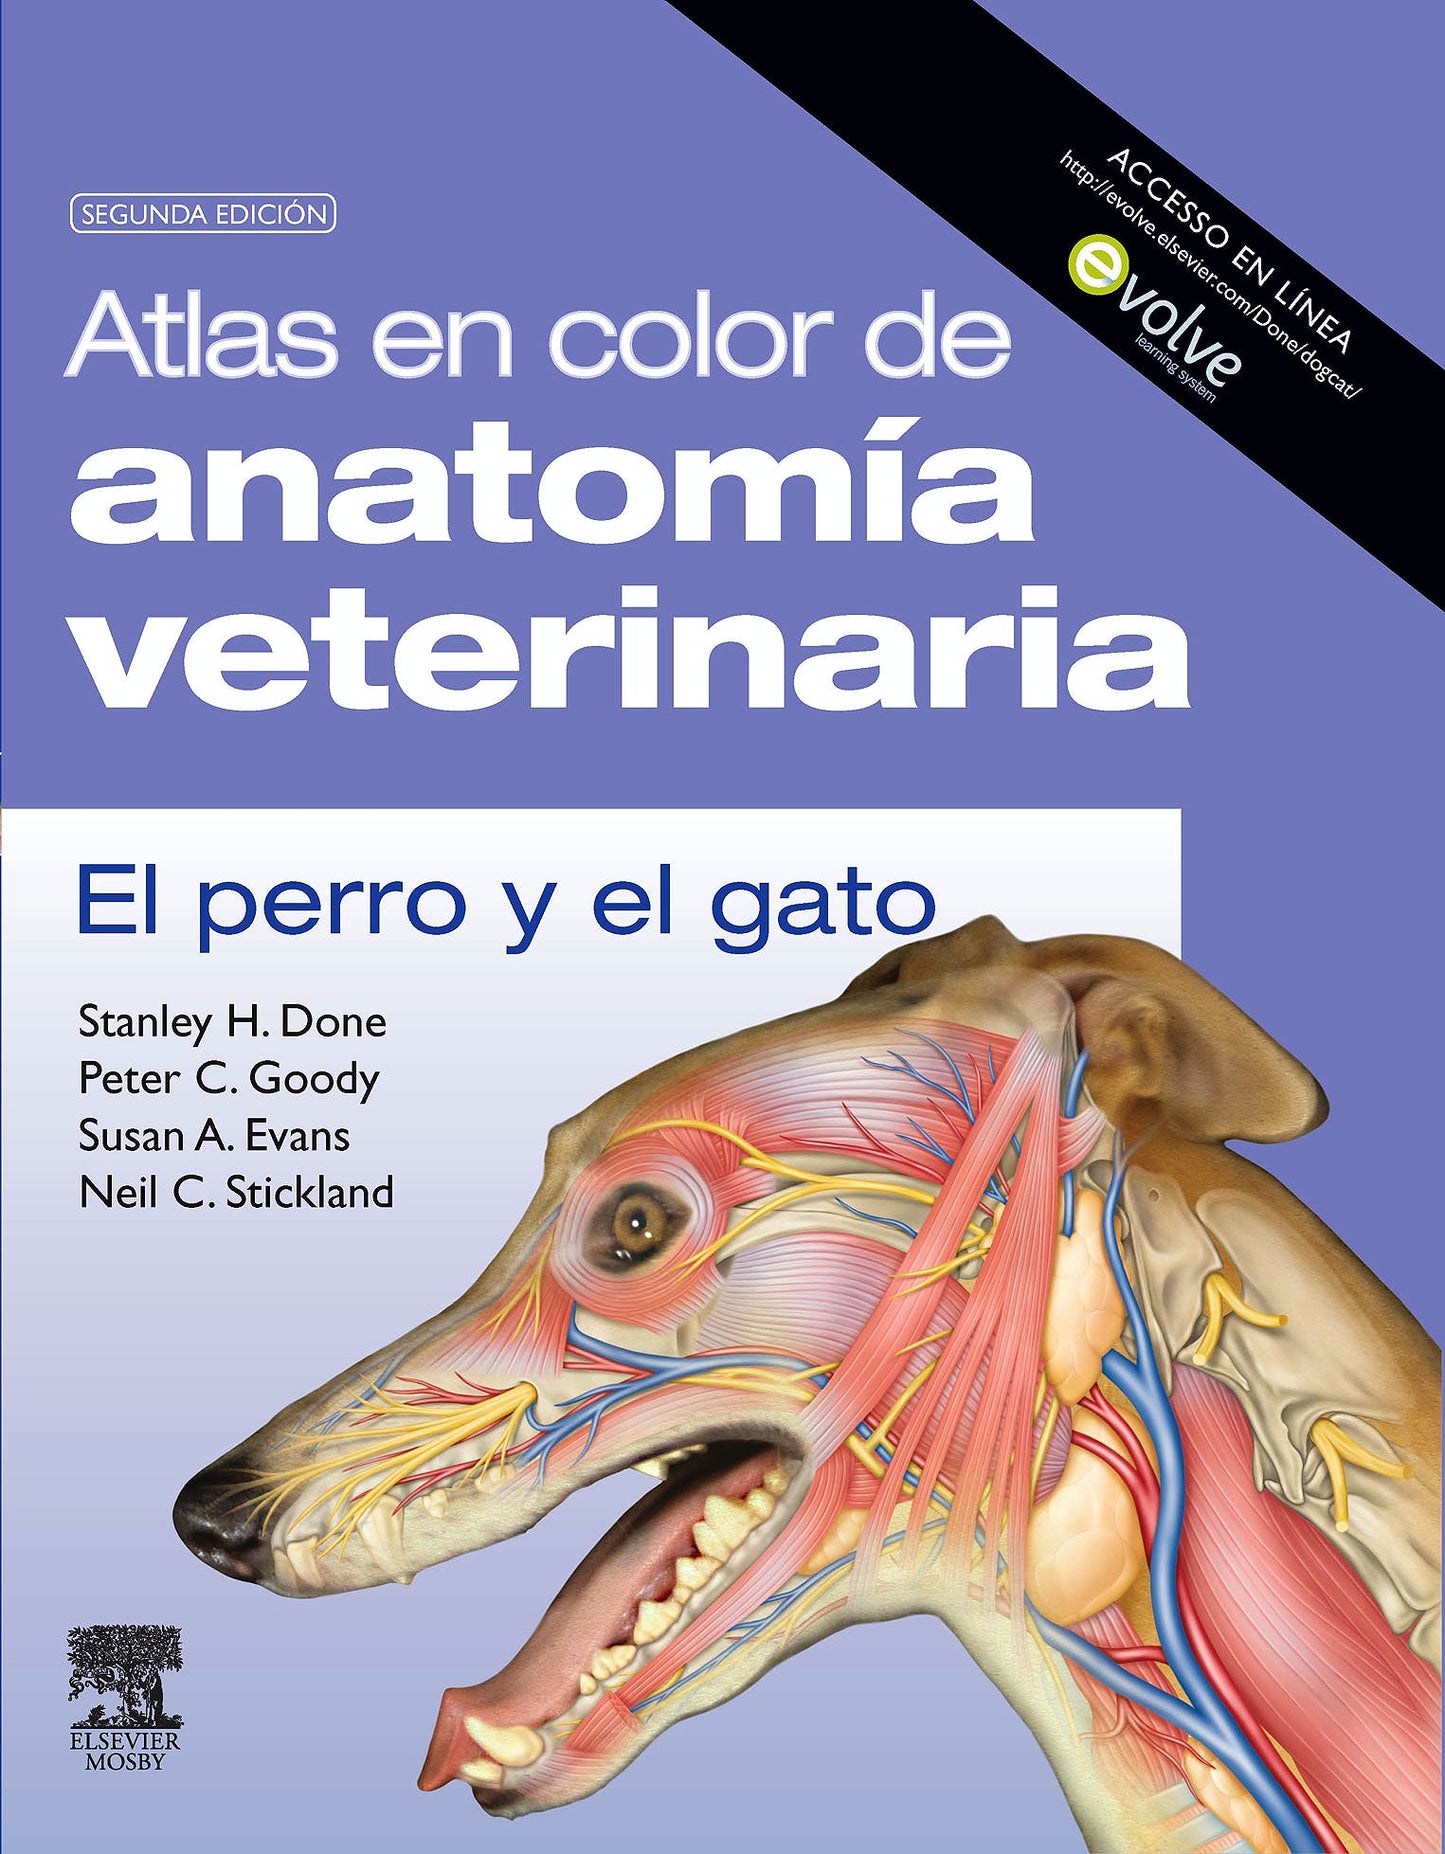 Atlas en Color de Anatomía Veterinaria. El Perro y el Gato.